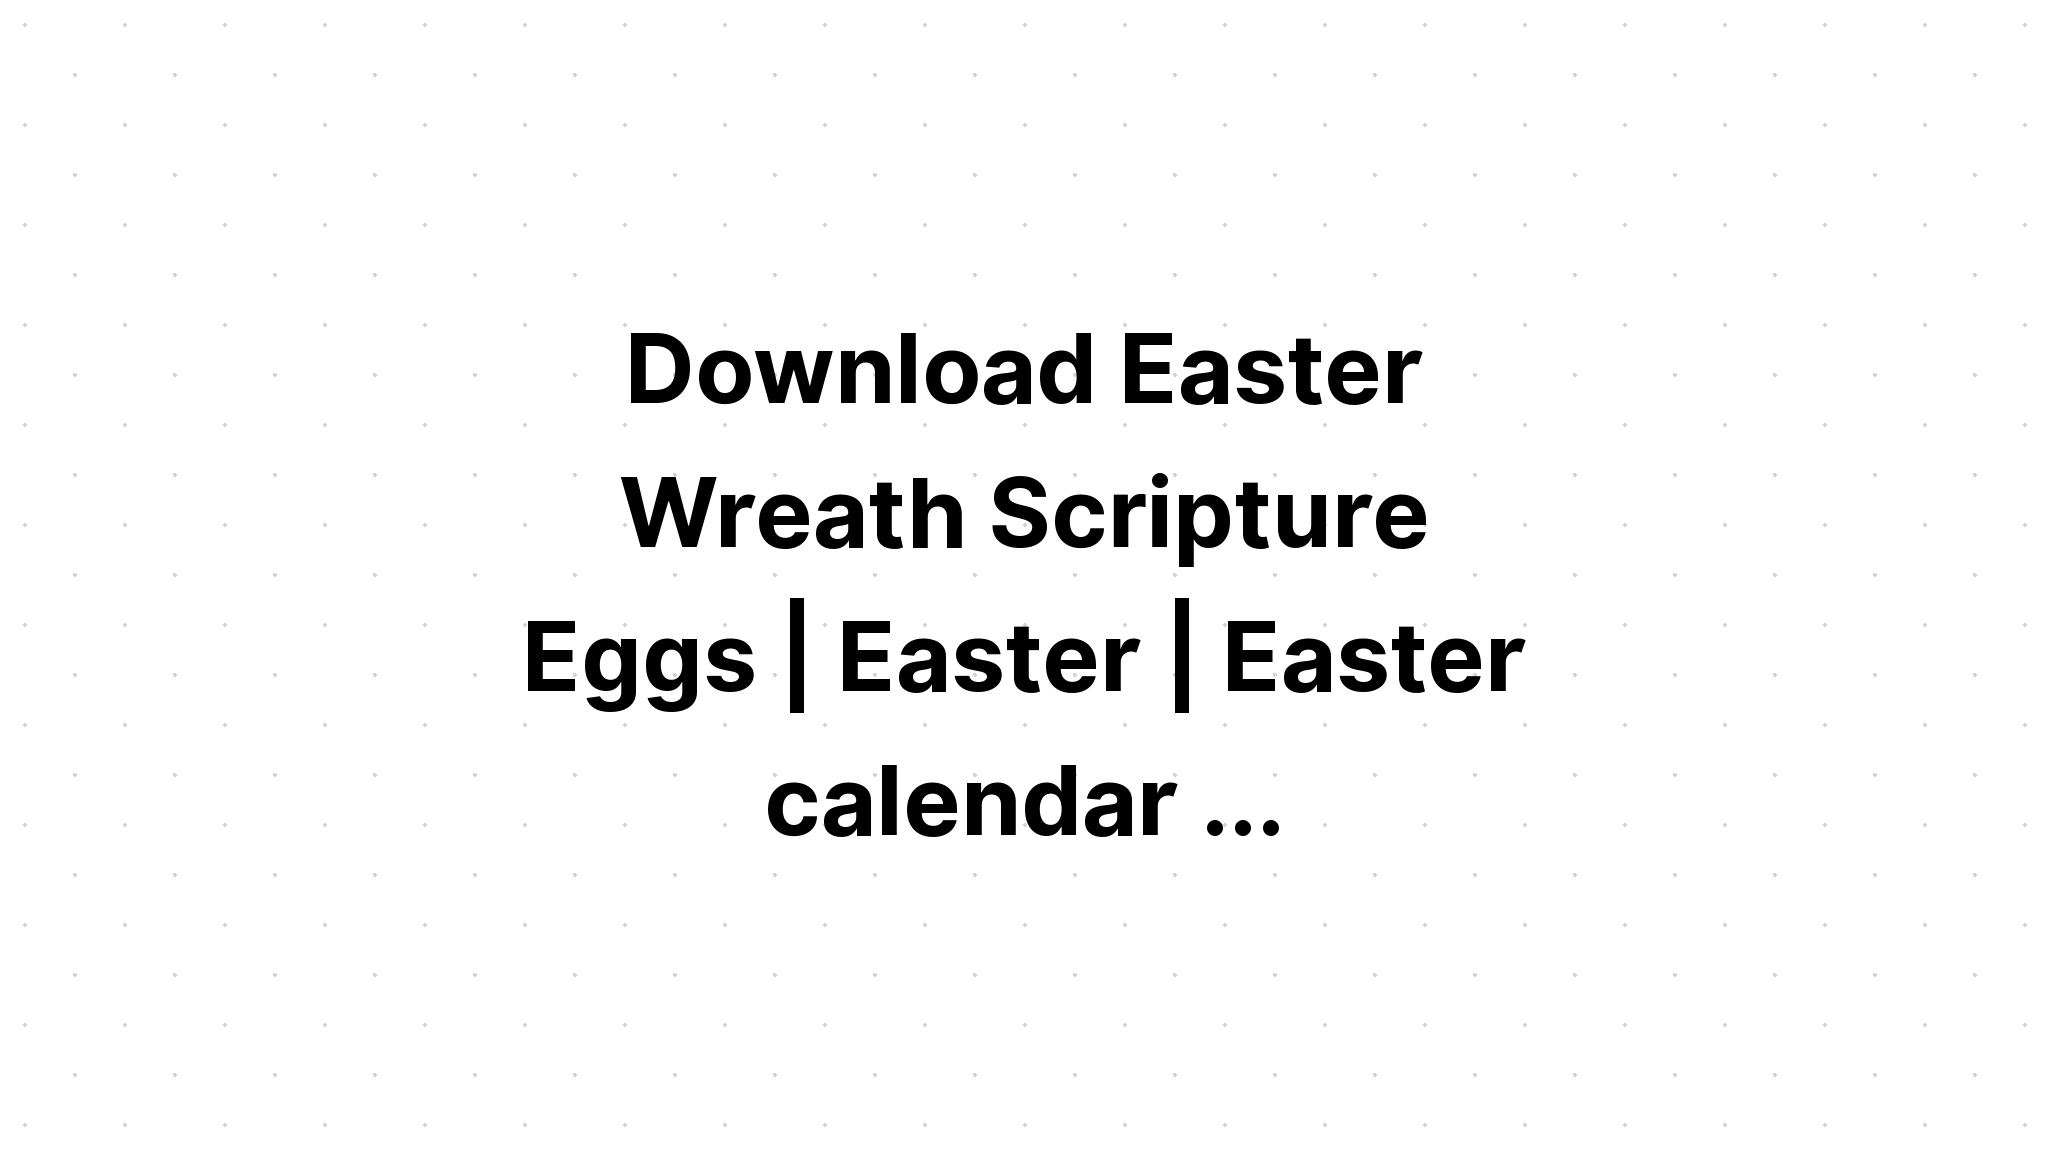 Download Lent Easter Scripture Cards?? SVG File